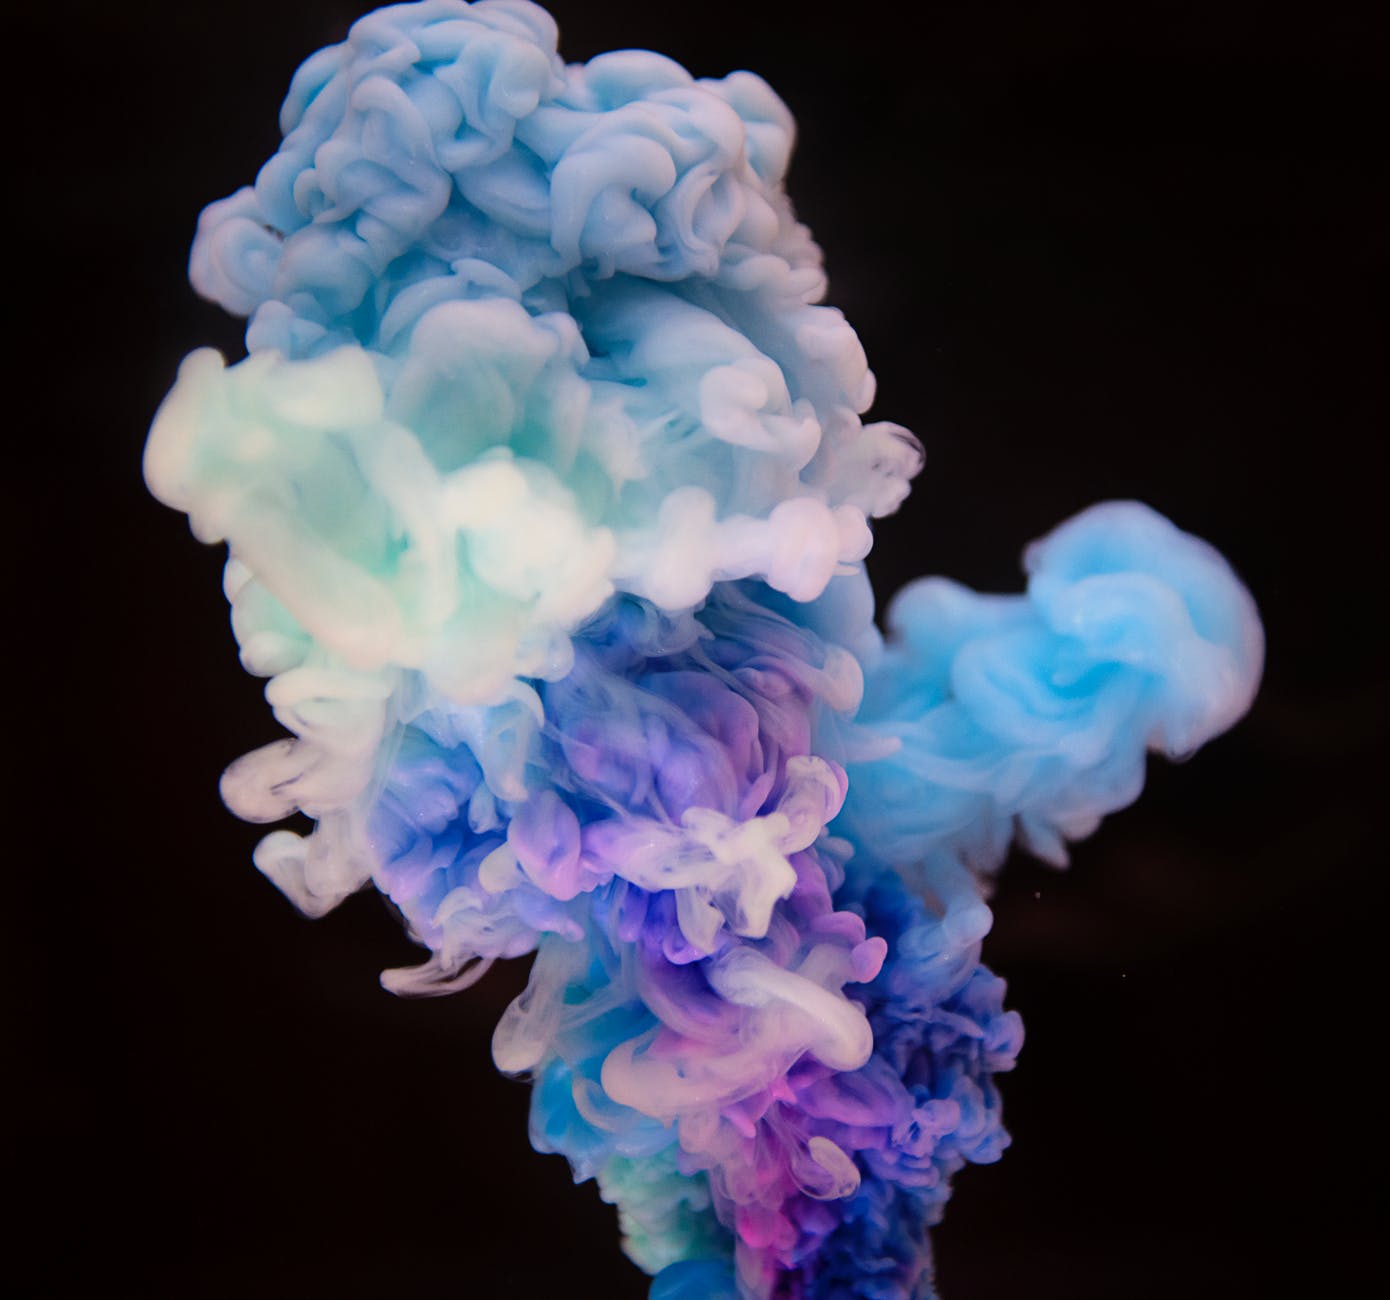 multicolored smoke bomb digital wallpaper